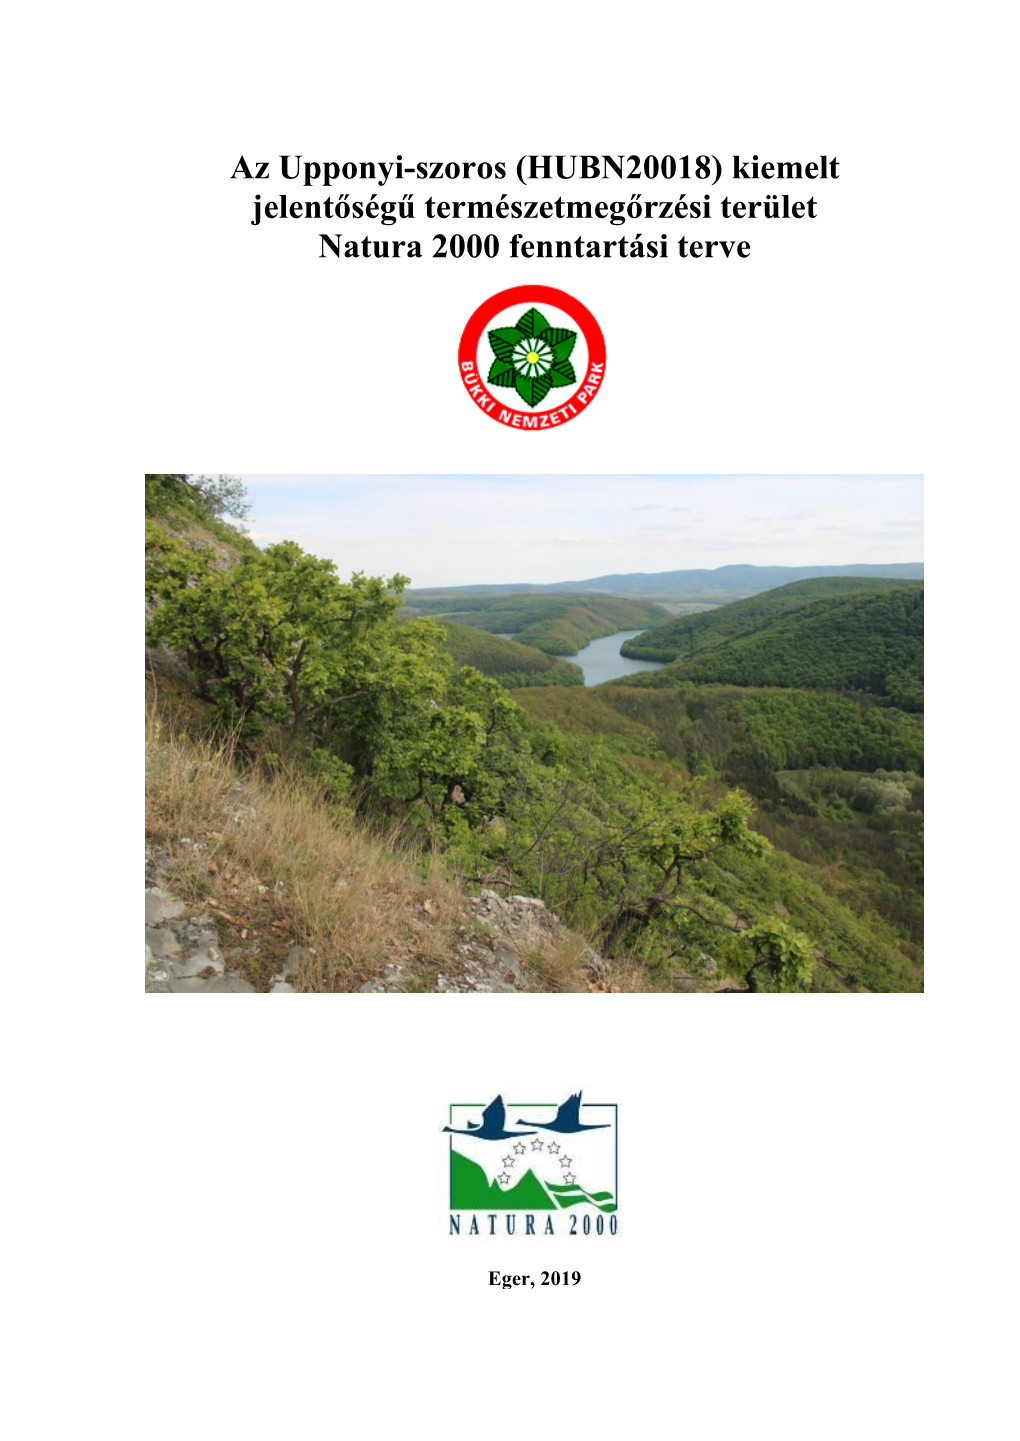 Az Upponyi-Szoros (HUBN20018) Kiemelt Jelentőségű Természetmegőrzési Terület Natura 2000 Fenntartási Terve